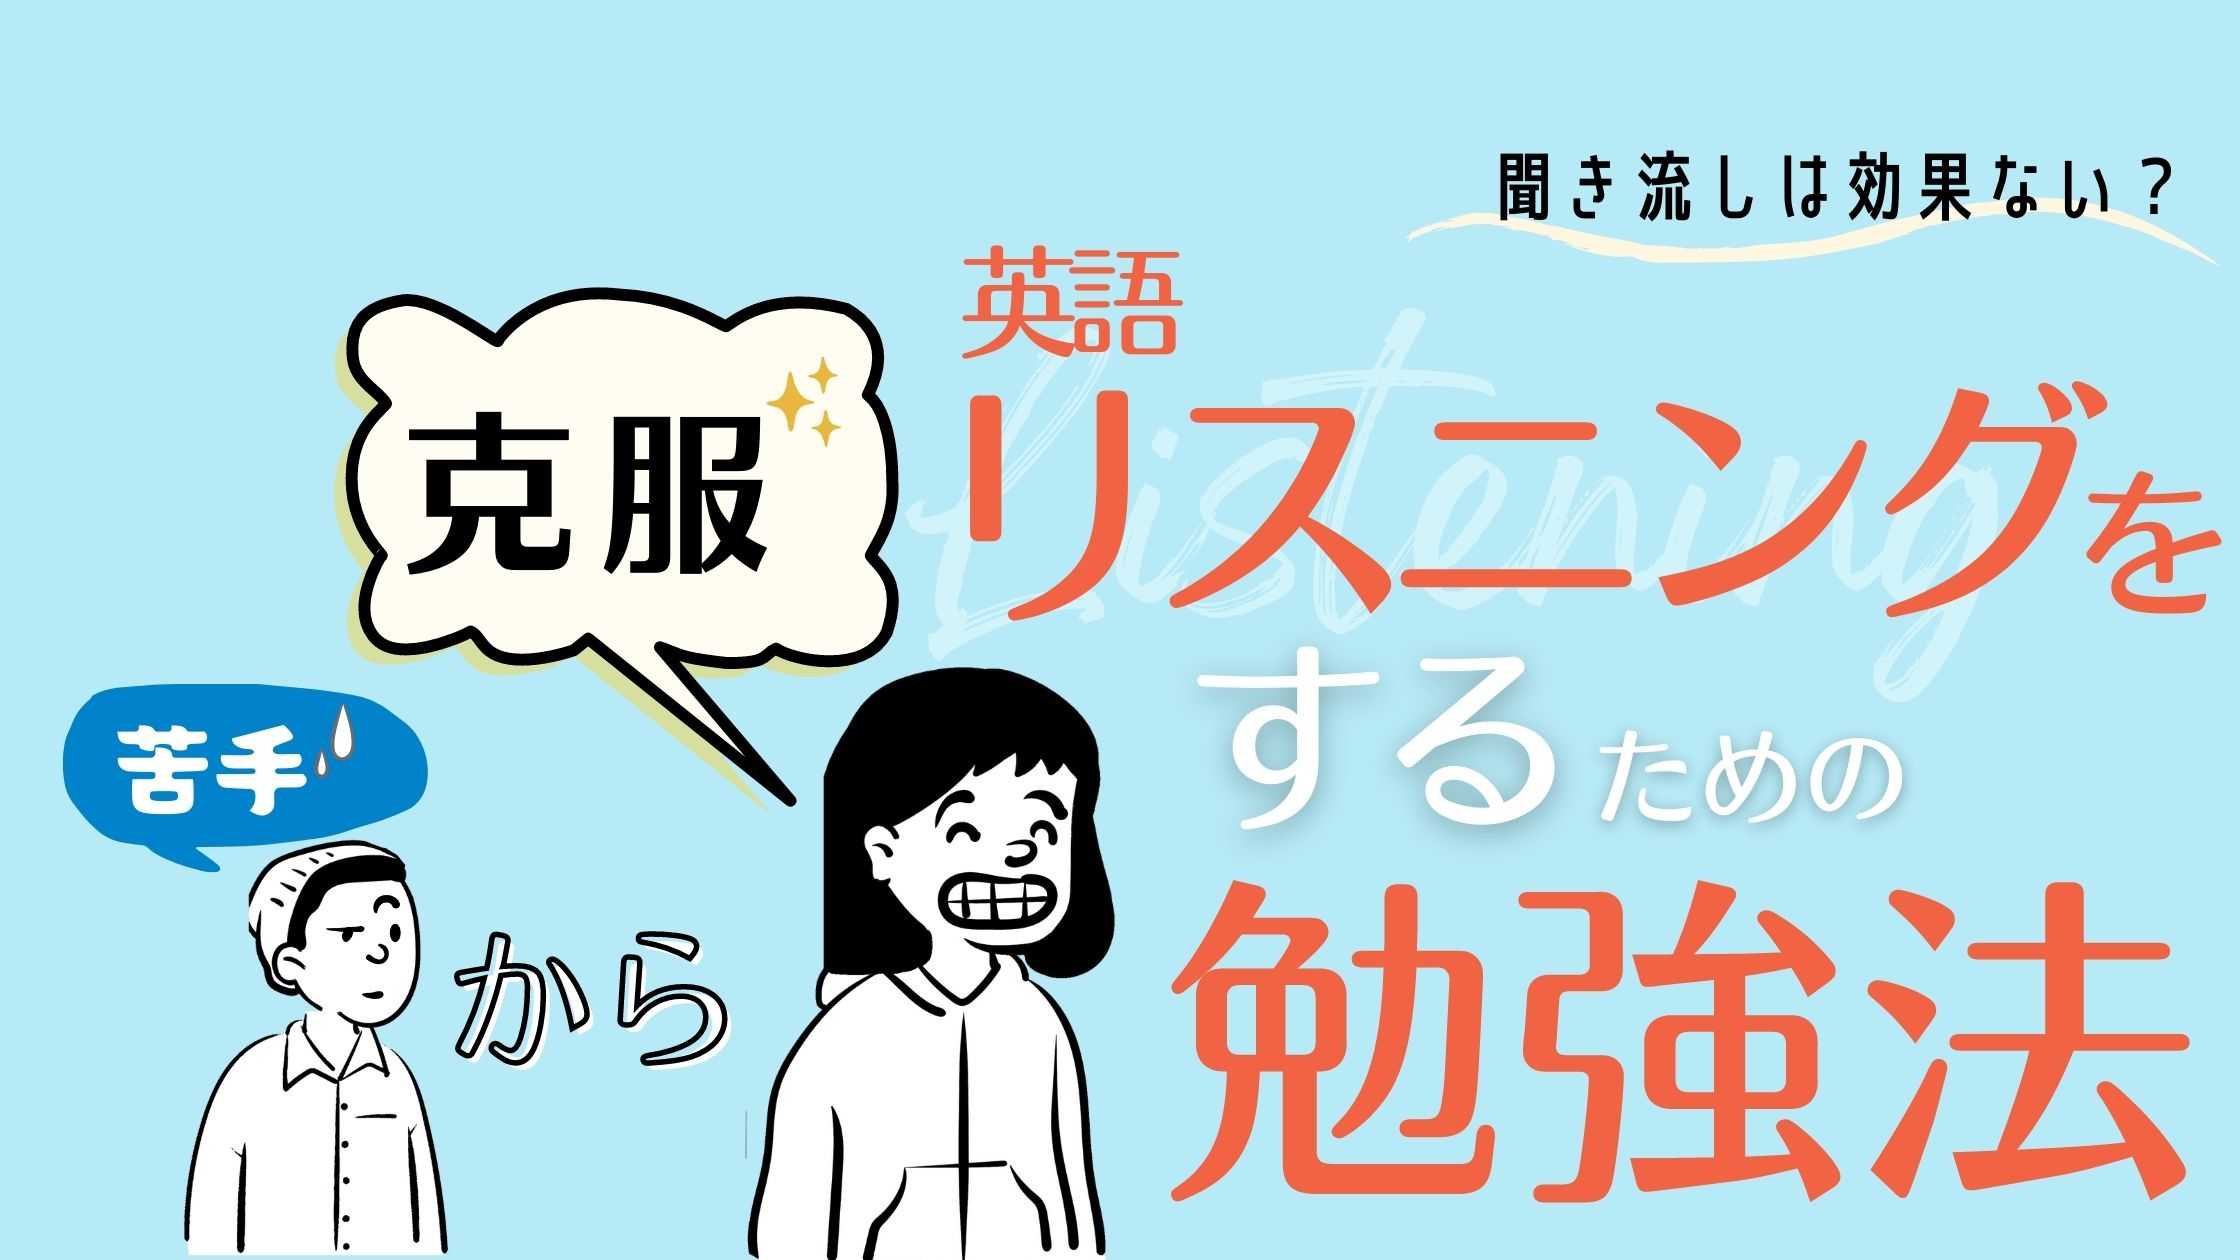 聞き流しは効果ない 苦手な英語リスニングを克服するための勉強法 Japanwonderguide